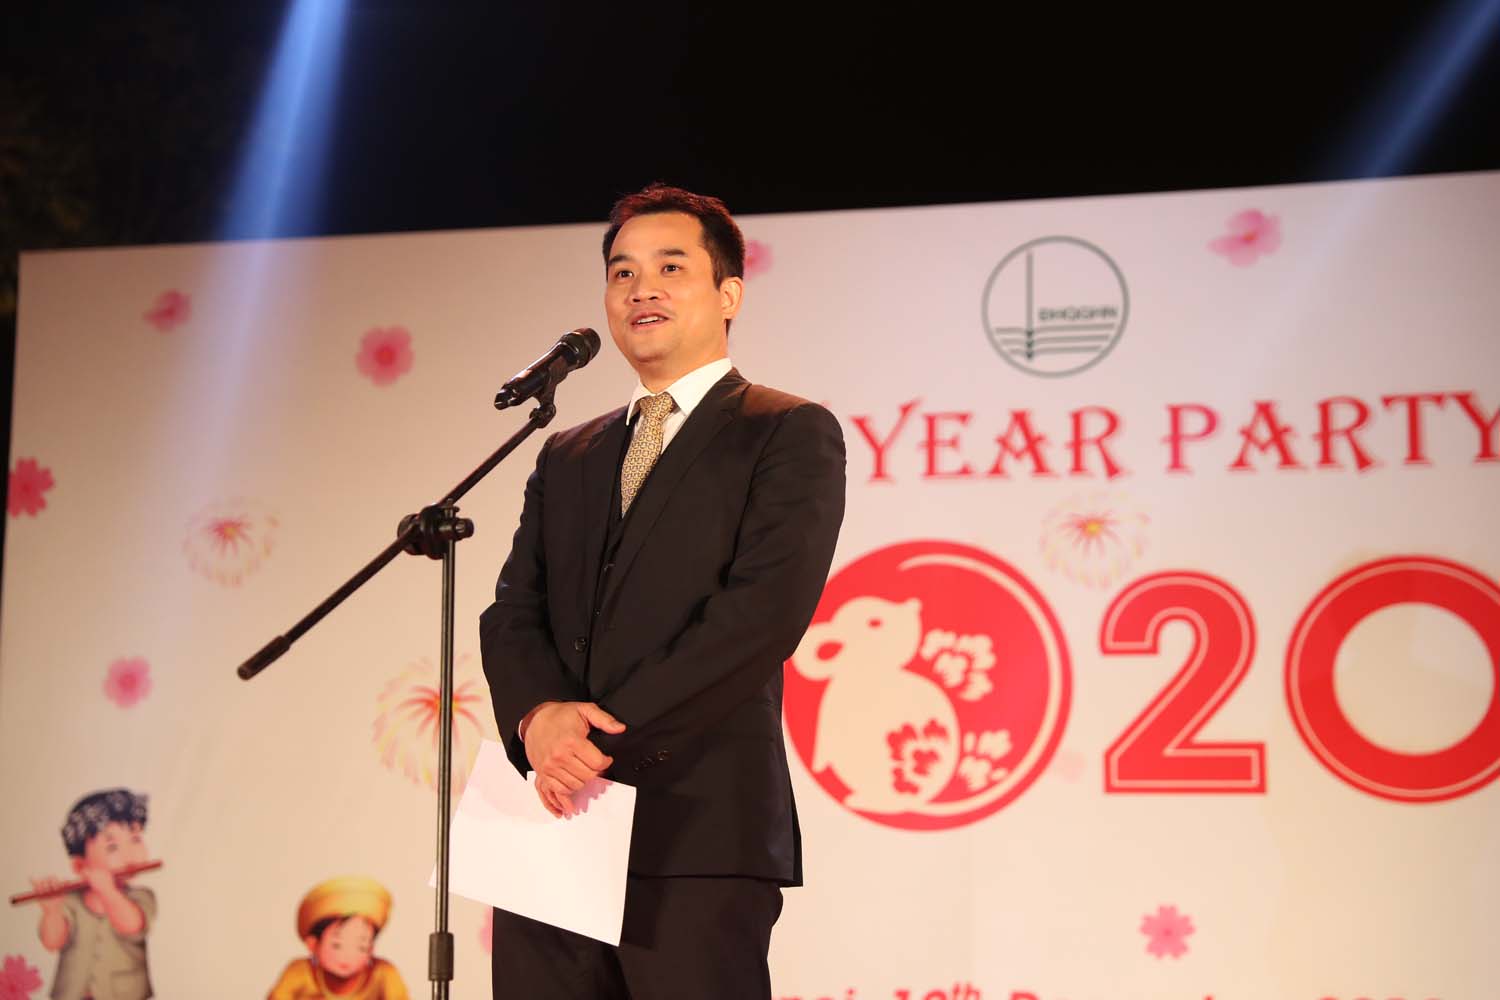 Le vice-directeur de l'UNV, M.Phạm Bảo Sơn, était présent et a pris la parole lors de la cérémonie.